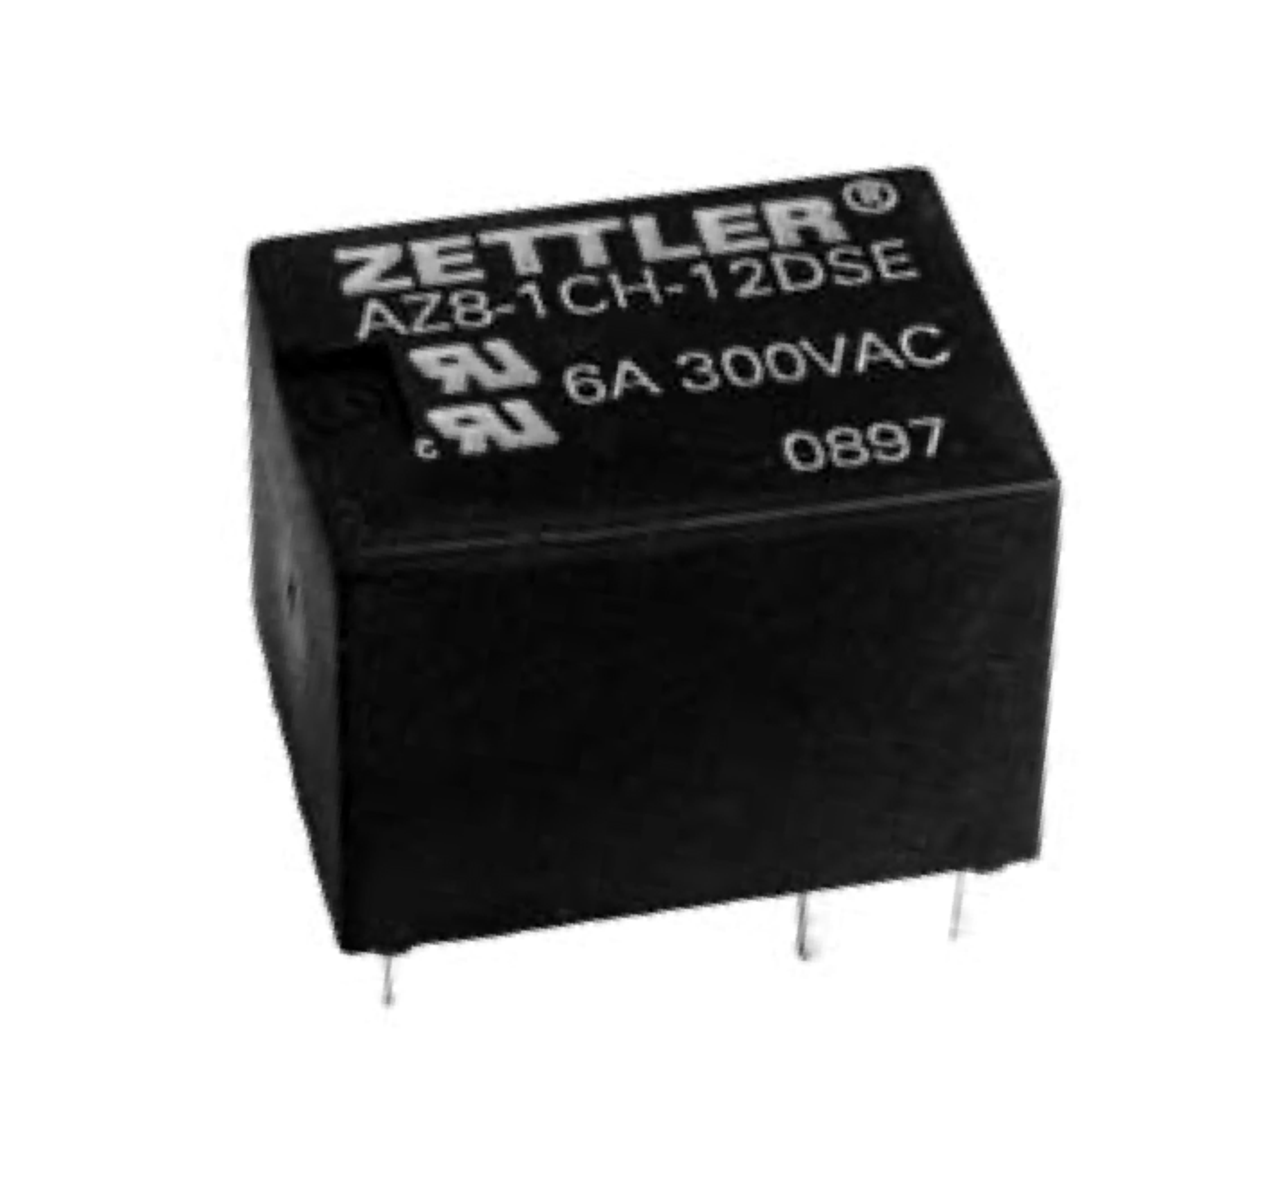 American Zettler AZ8-1CT-6DE Power Relay